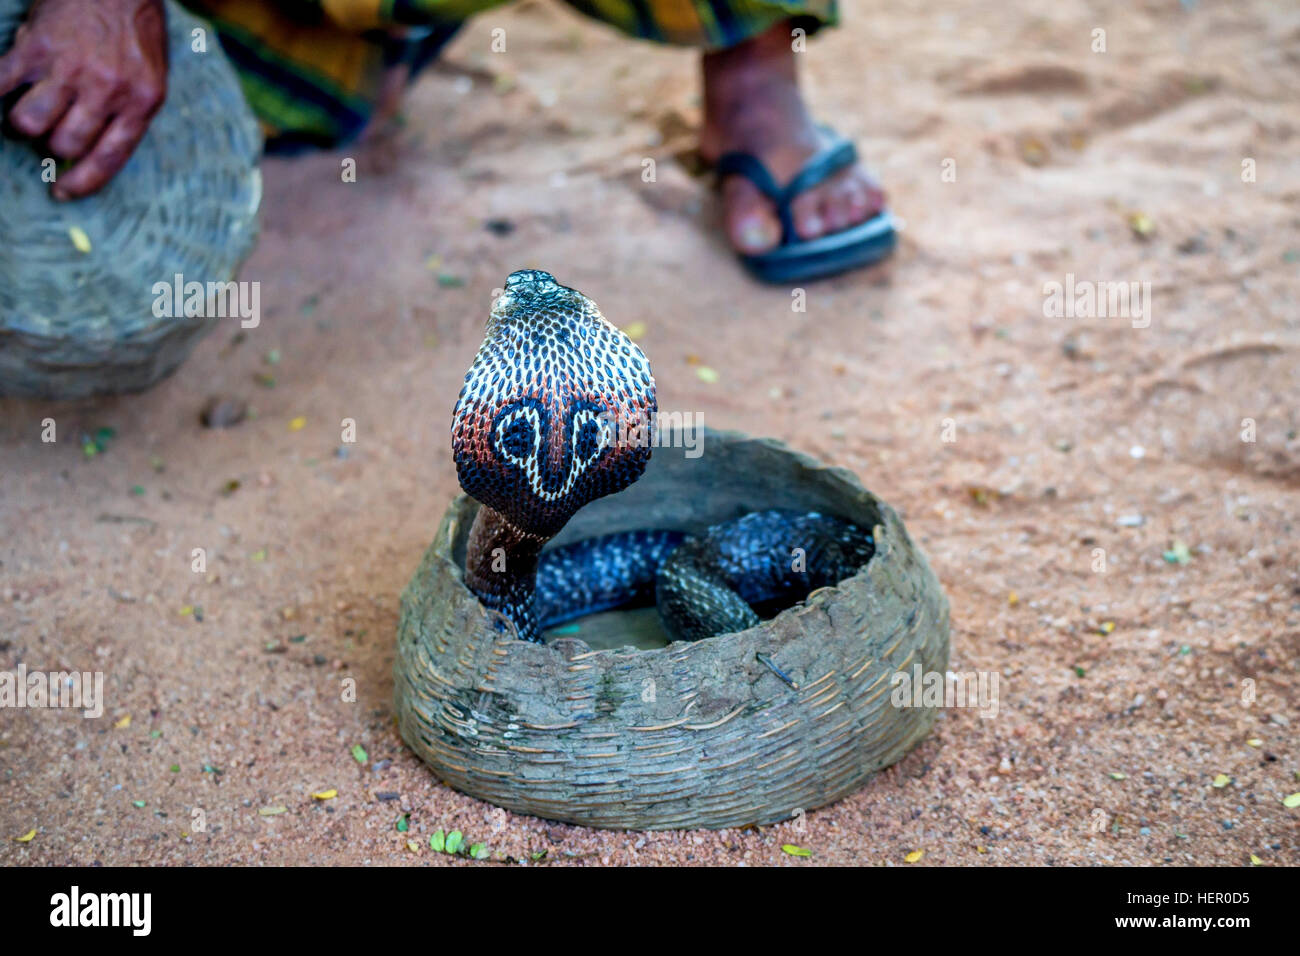 Enigme de serpent ou fakir tuyau joue à enchanter cobra Banque D'Images